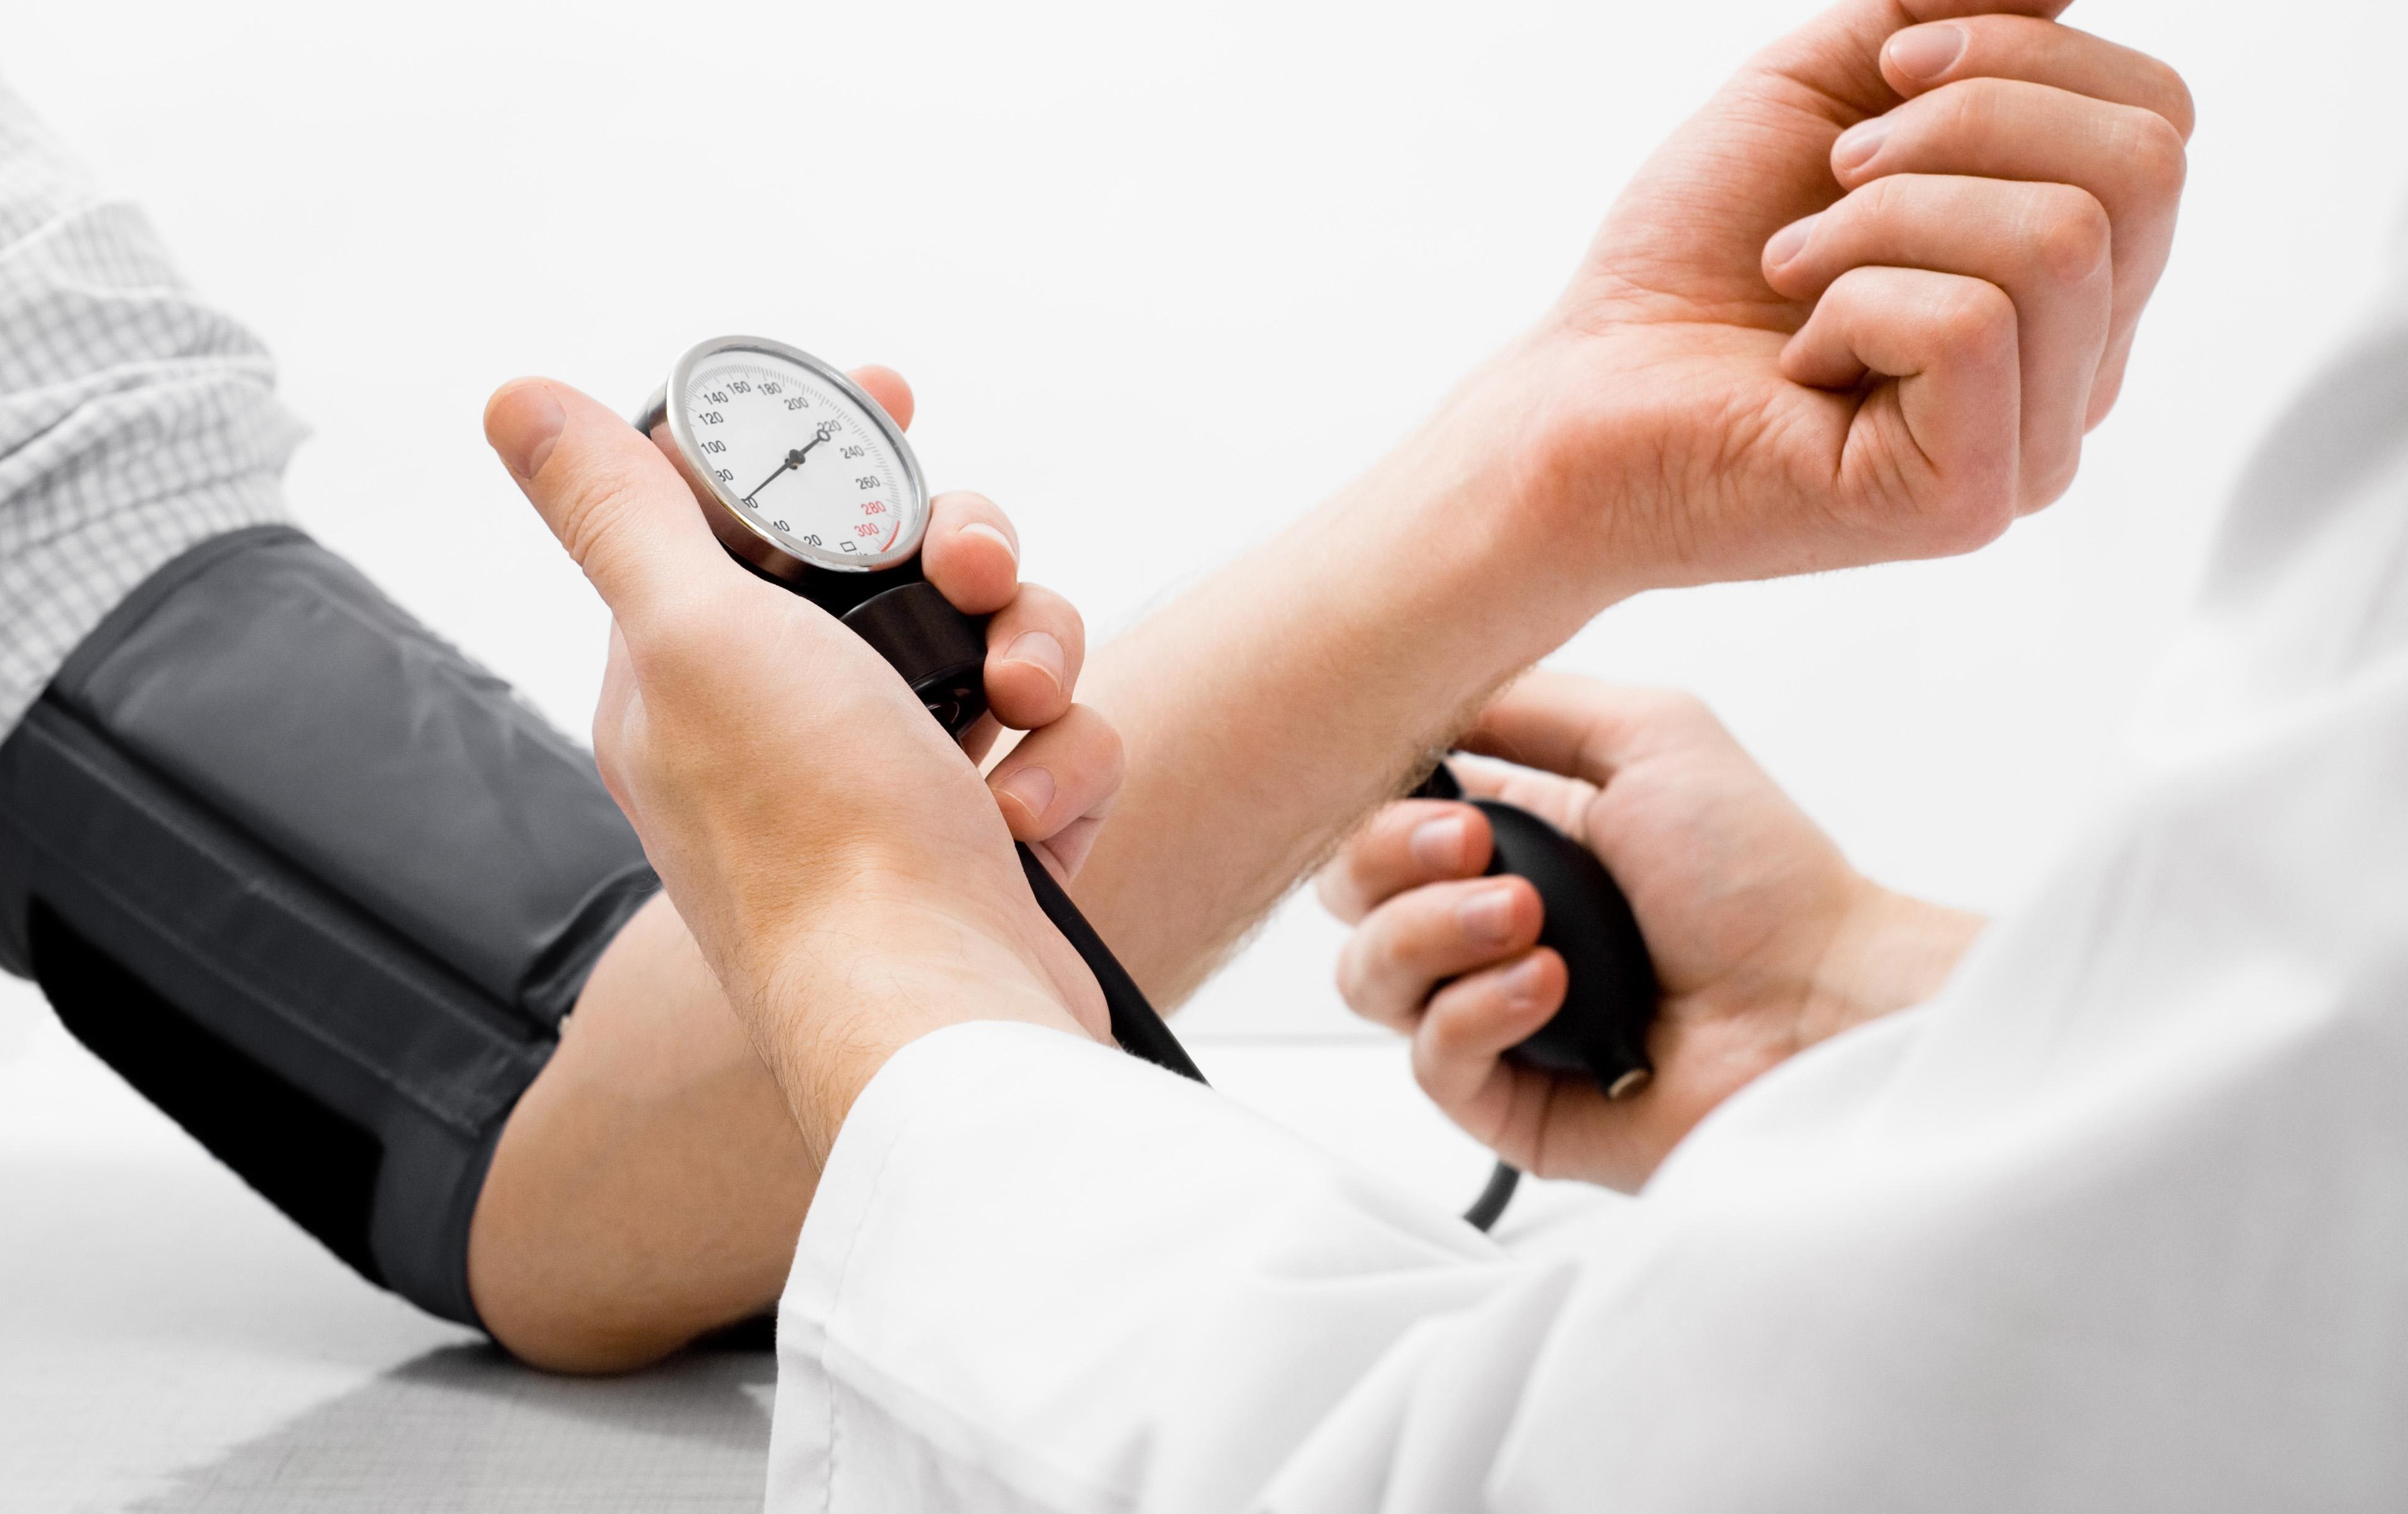 KARDIOLOG OTKRIVA 3 mita o visokom krvnom pritisku u koja bi odmah trebalo da prestanete da verujete! (VIDEO)